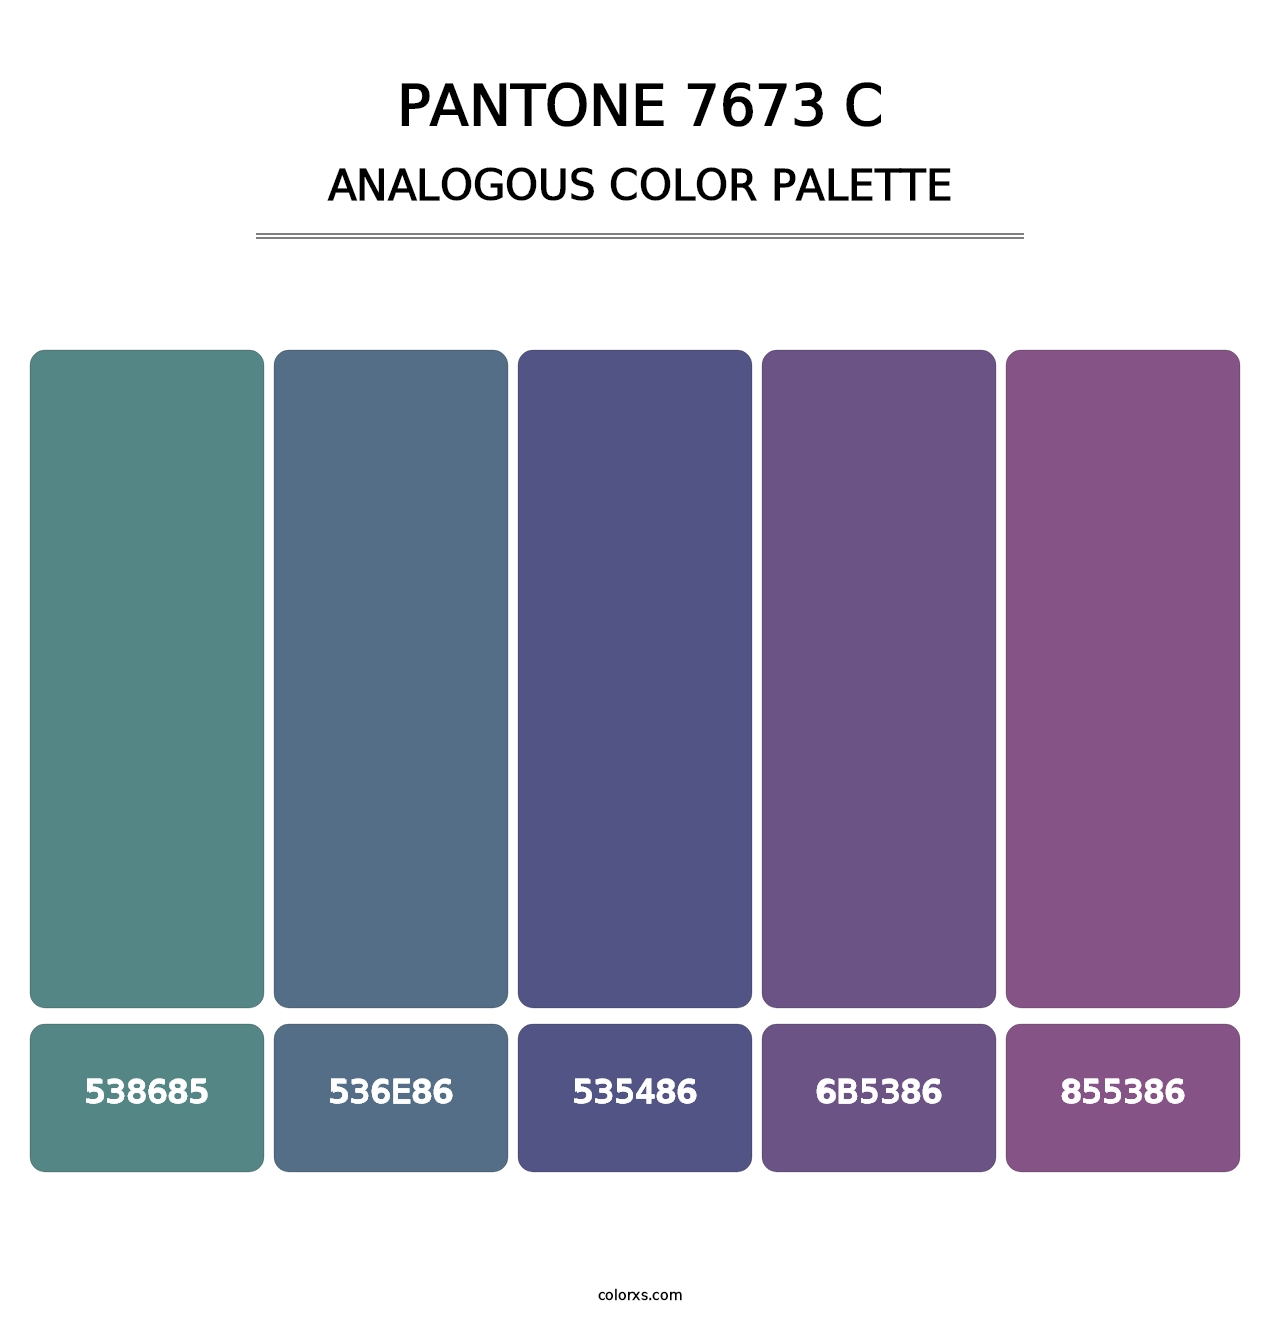 PANTONE 7673 C - Analogous Color Palette